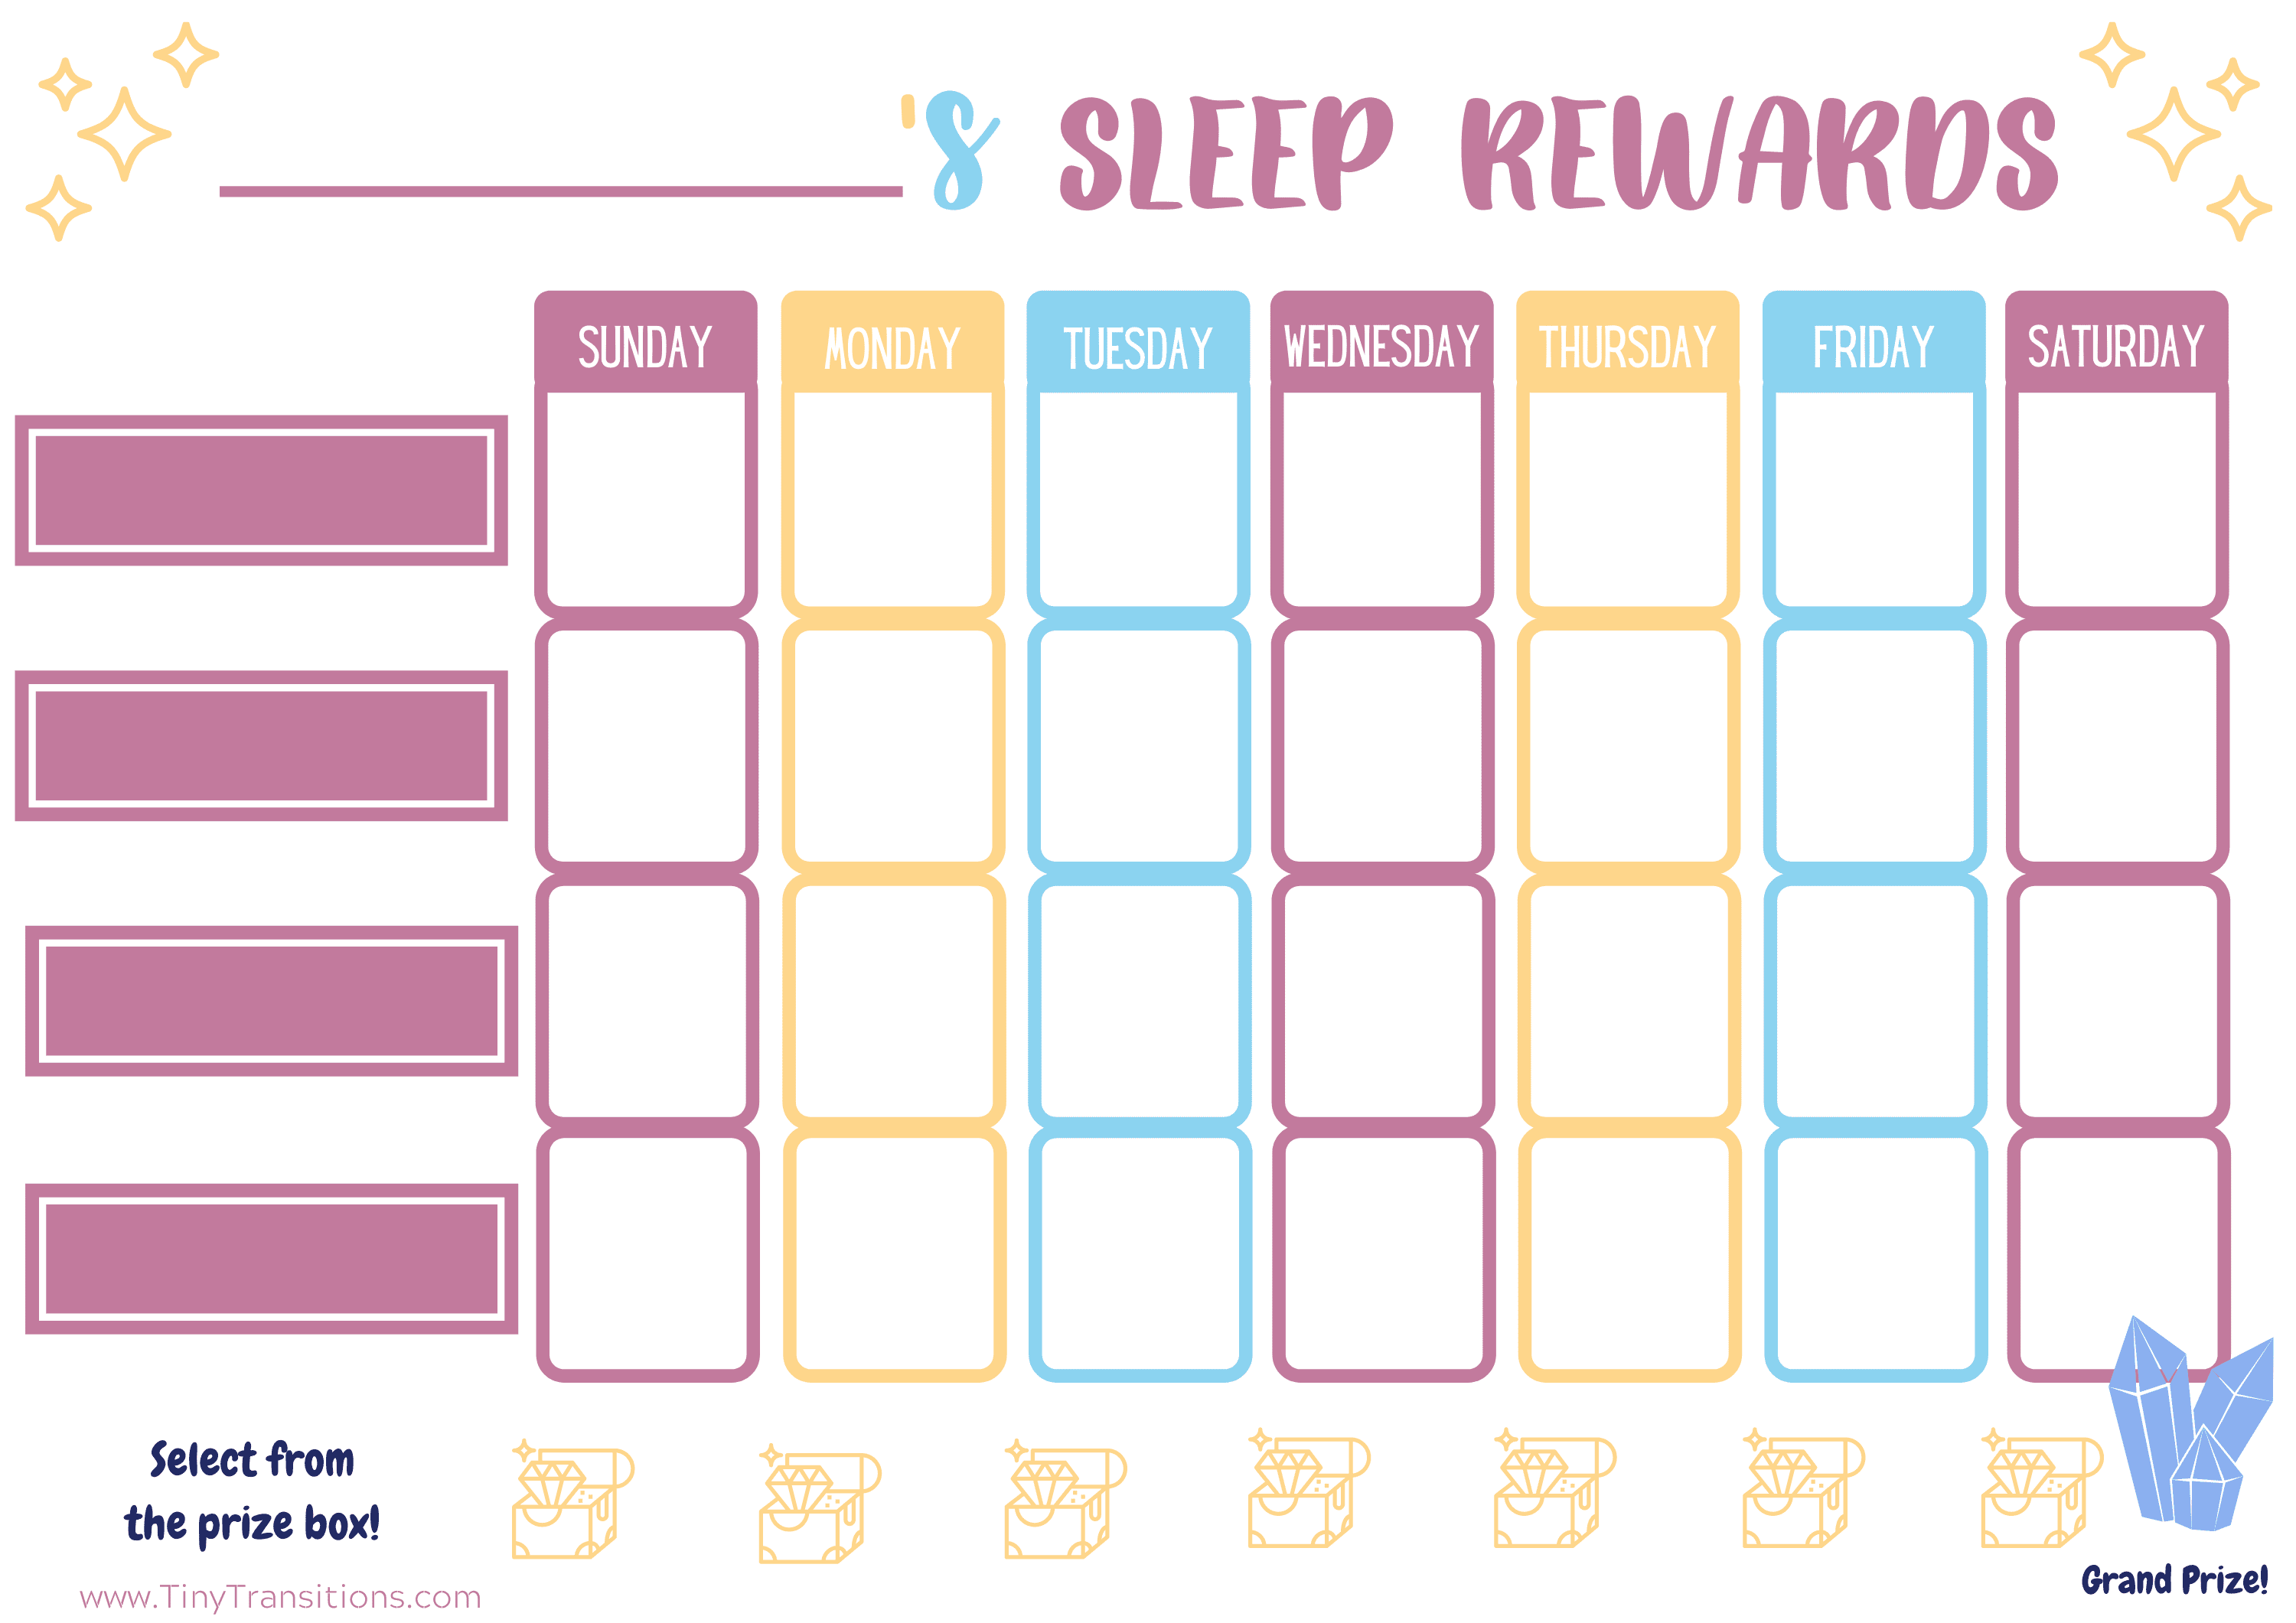 Tablas de recompensas de siestas y horas de acostarse para niños pequeños